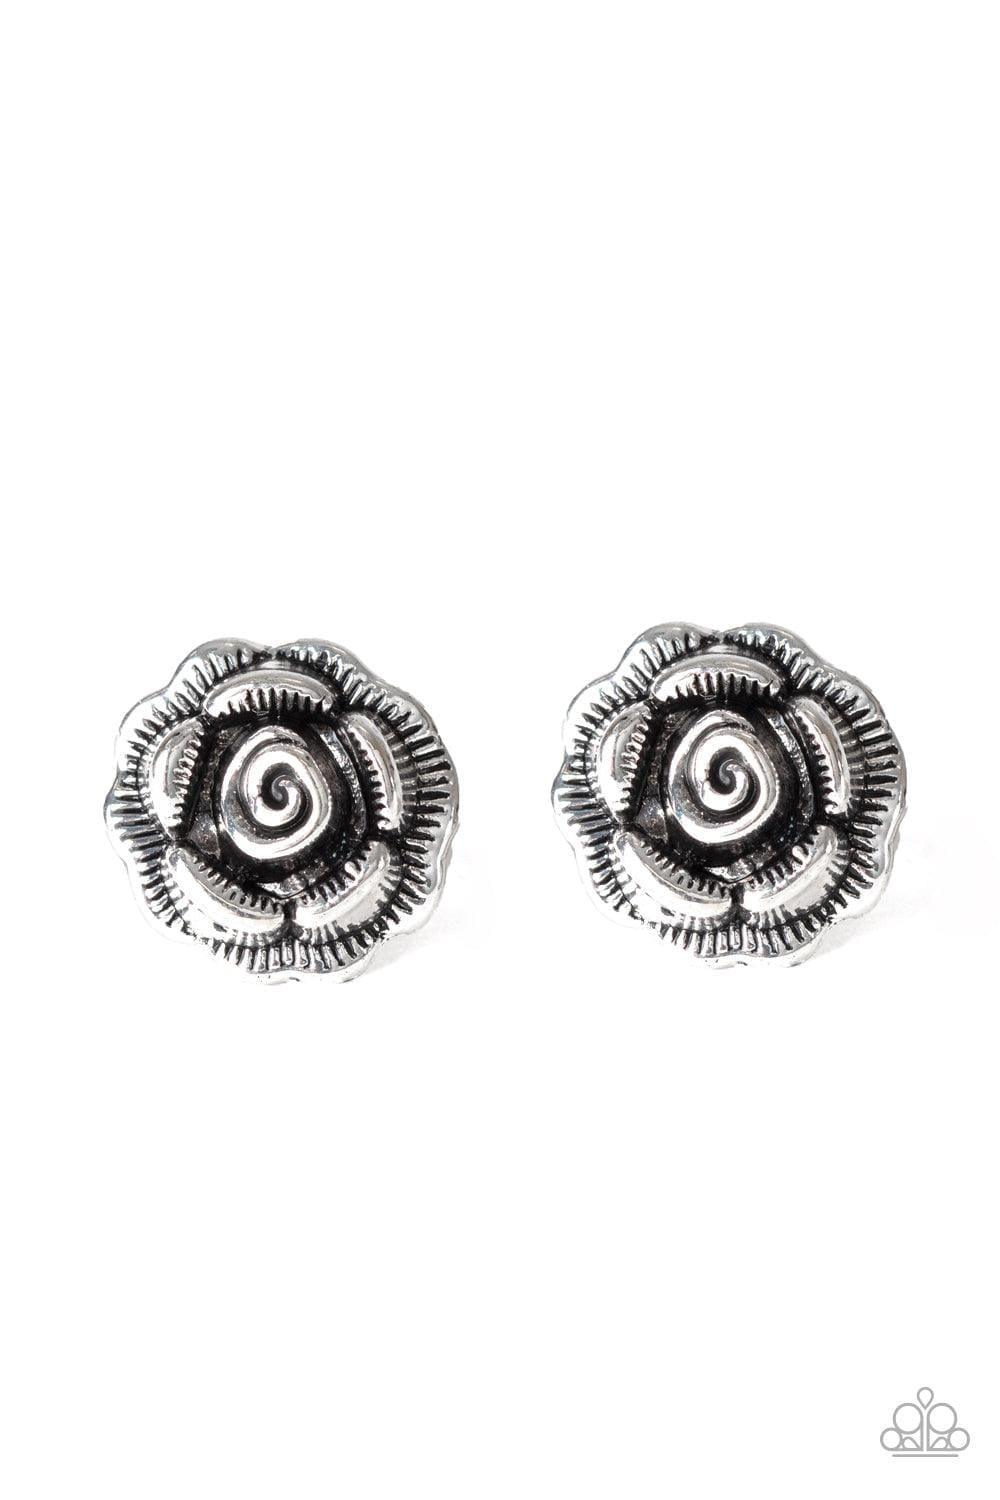 Paparazzi Accessories - Best Rosebuds - Silver Earrings - Bling by JessieK